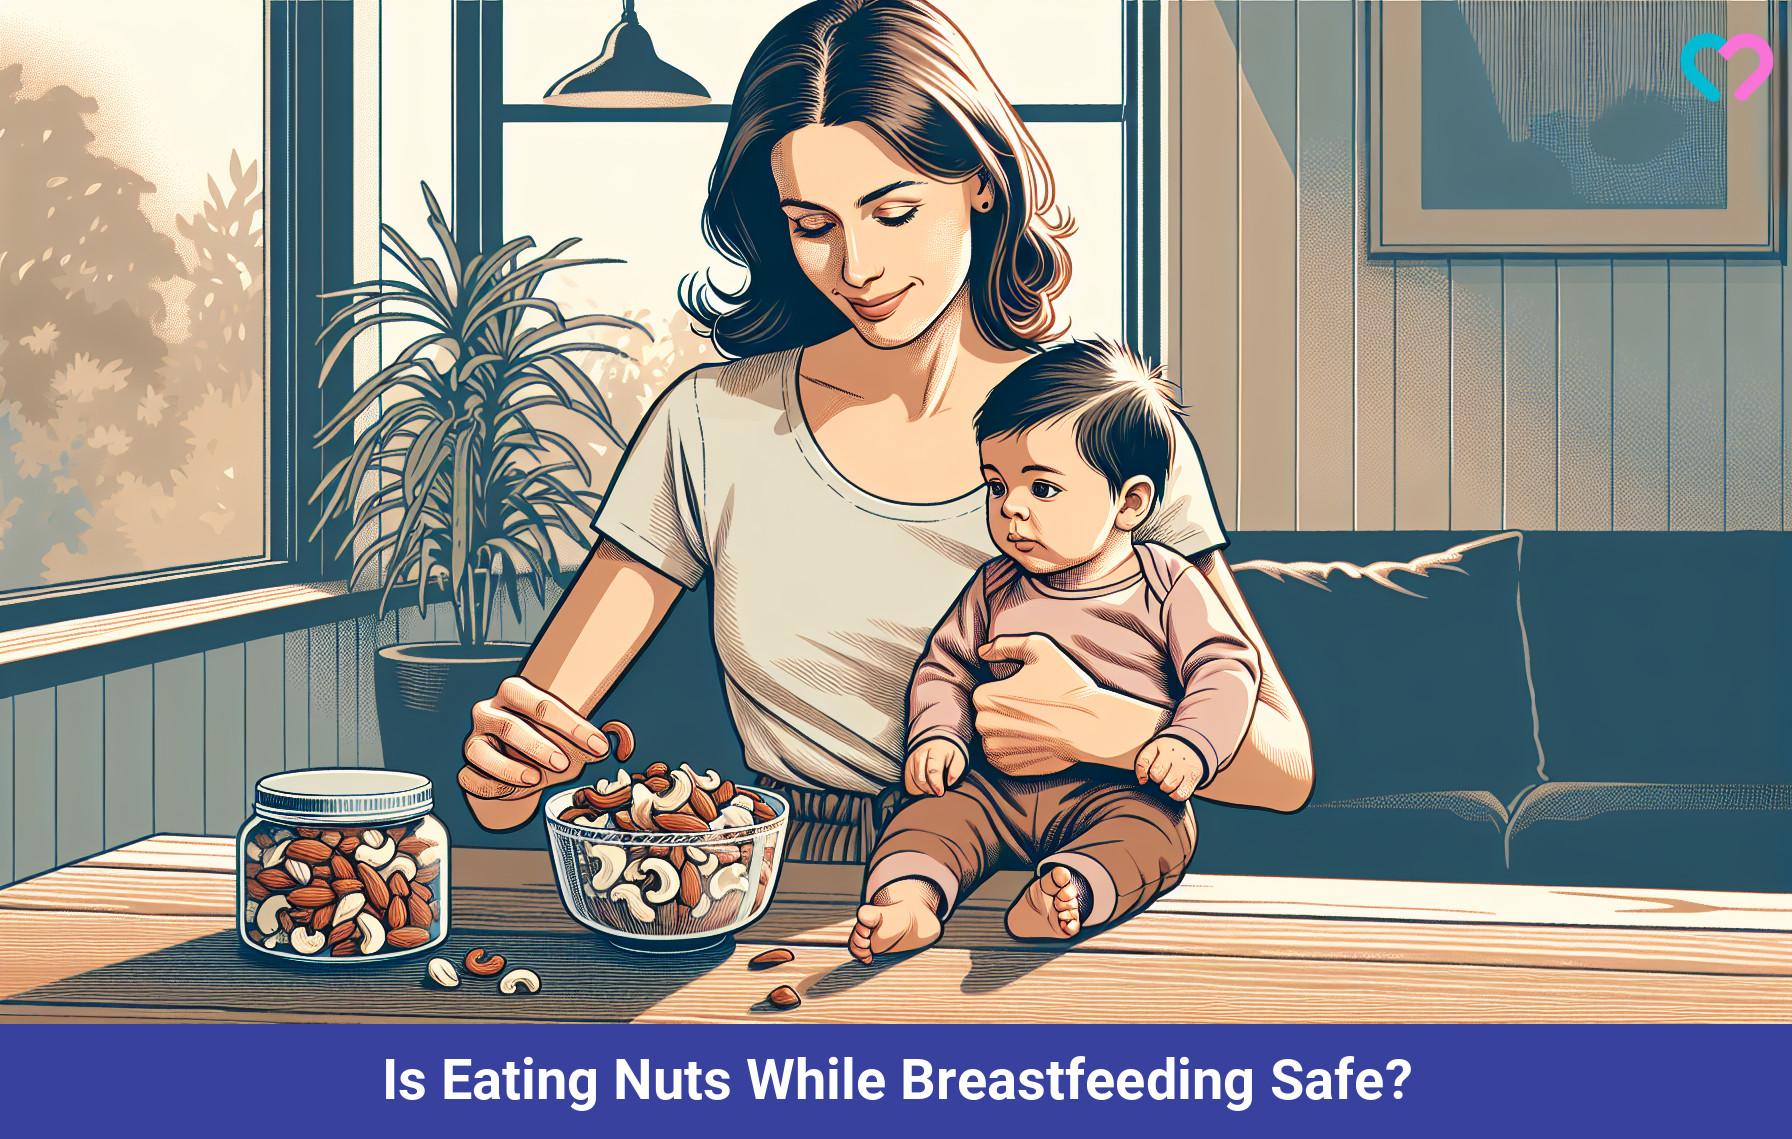 Nuts During Breastfeeding_illustration